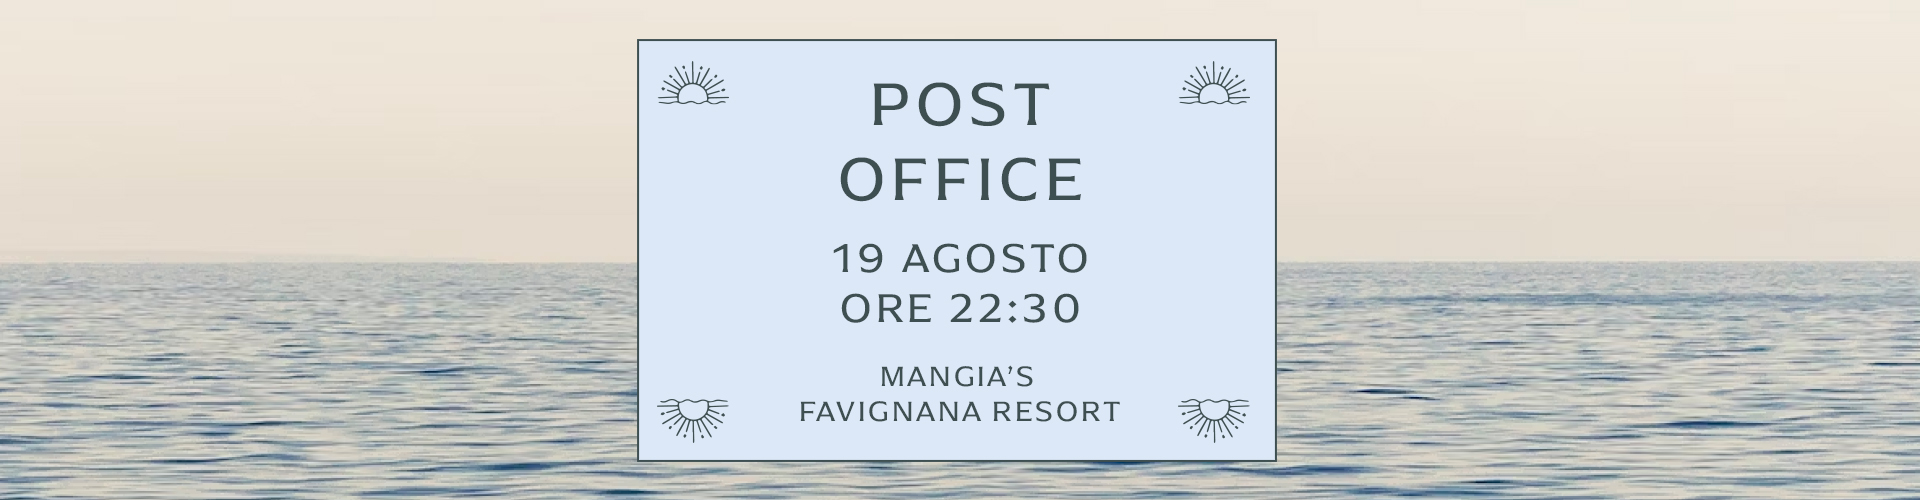 Post Office a Favignana